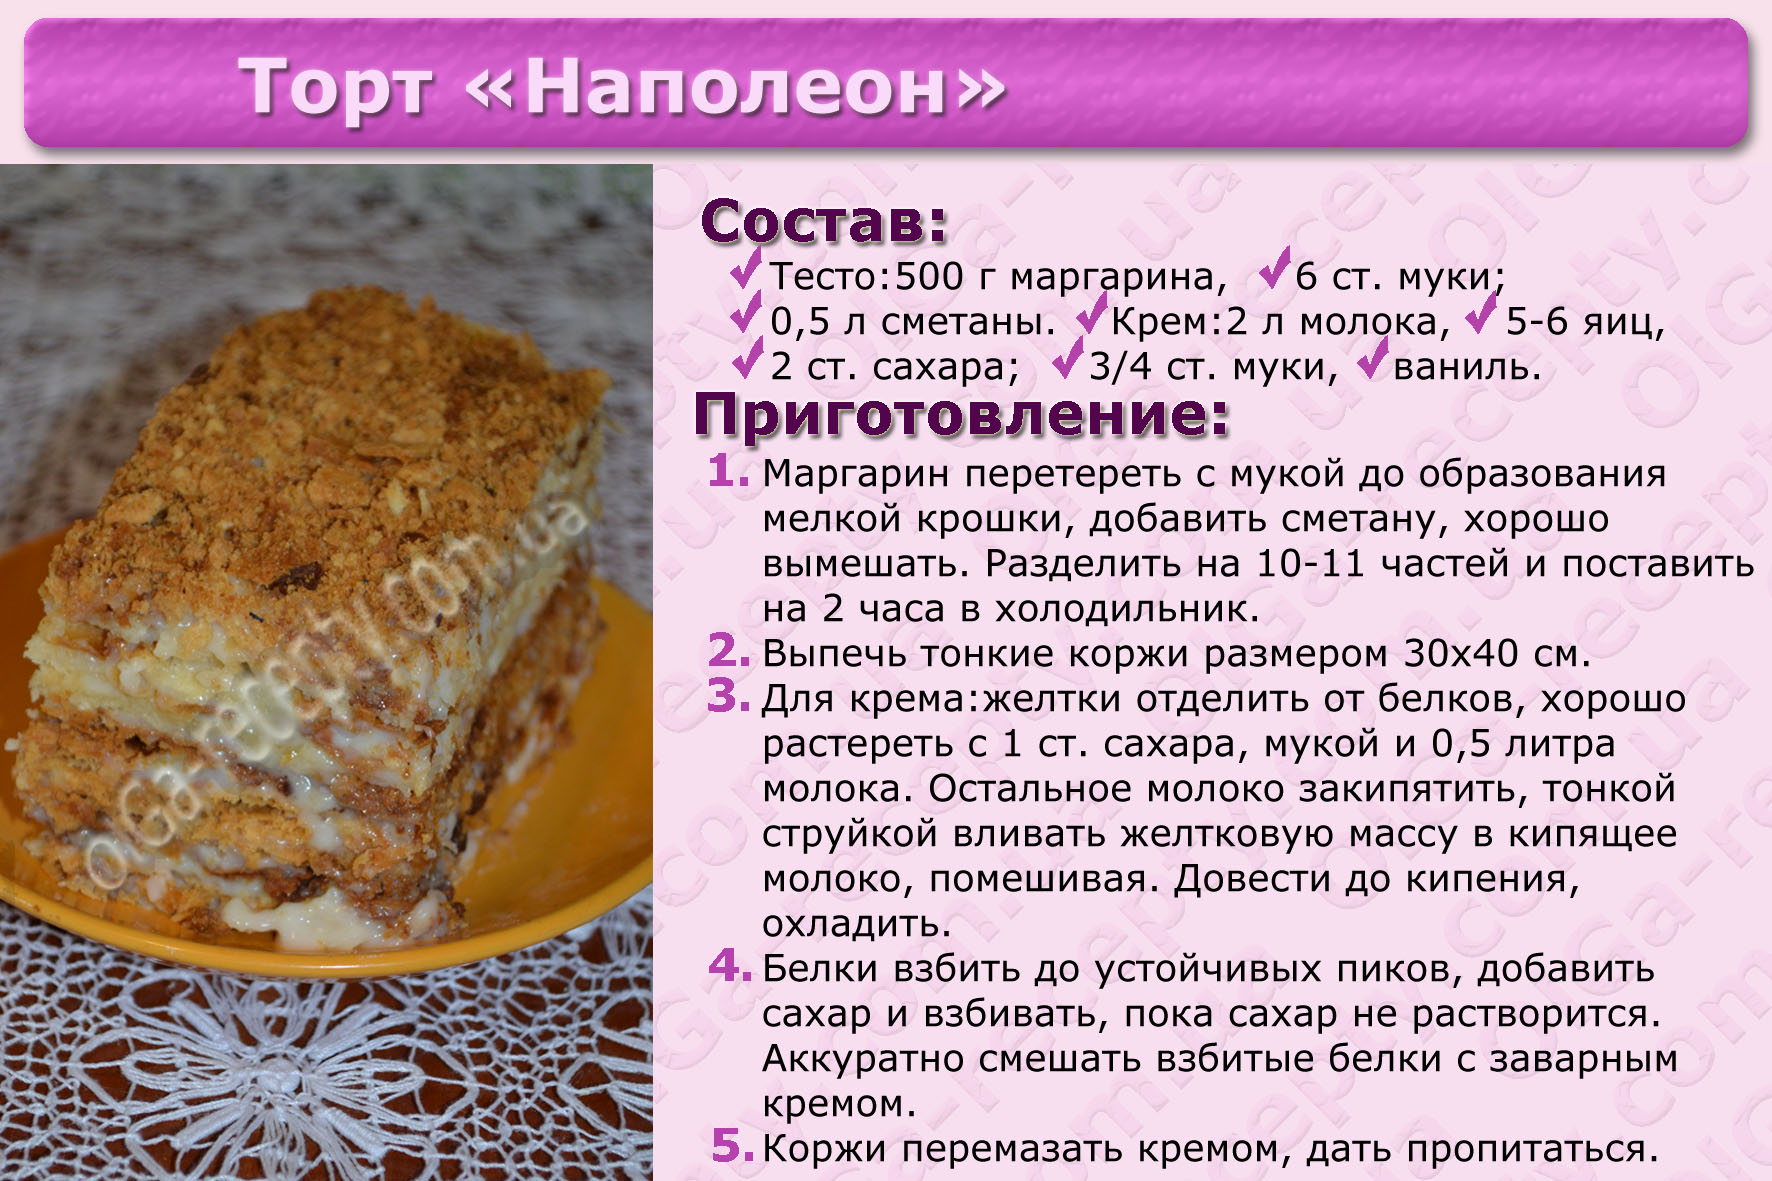 Вкусный домашний торт рецепт на день рождения. Рецепты тортов с описанием. Картинки с рецептами тортов. Несложные рецепты тортов с картинкой. Рецепт торта красивый простой.